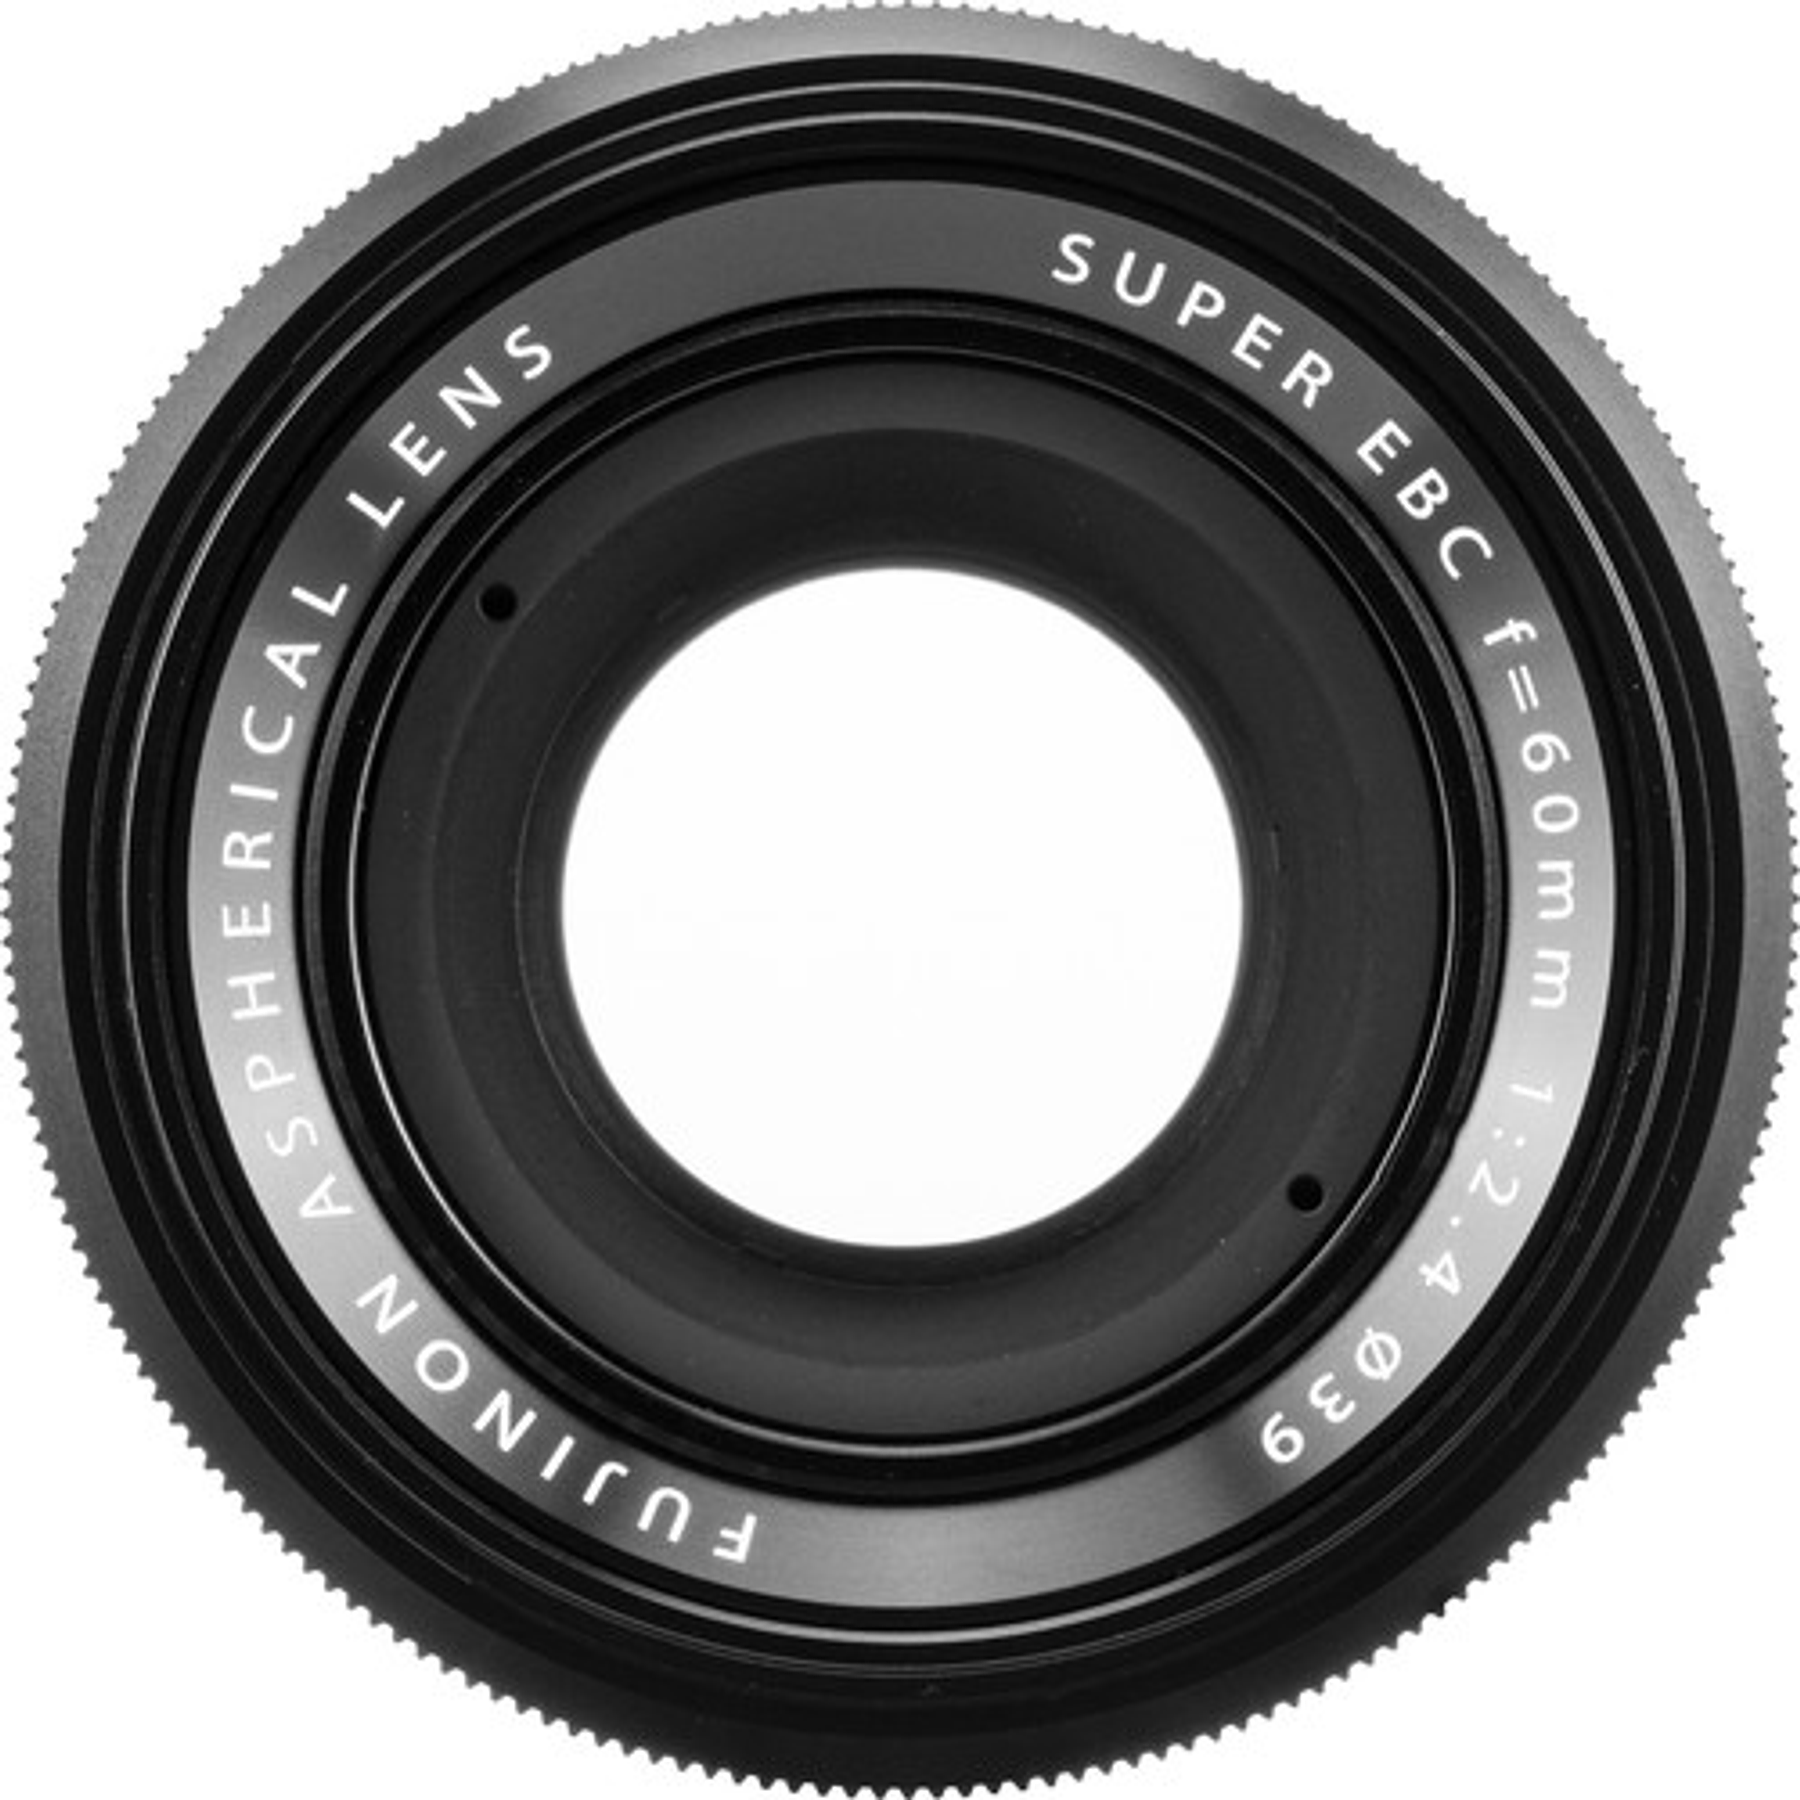 Fujifilm XF 60mm. F2.4 R MACRO